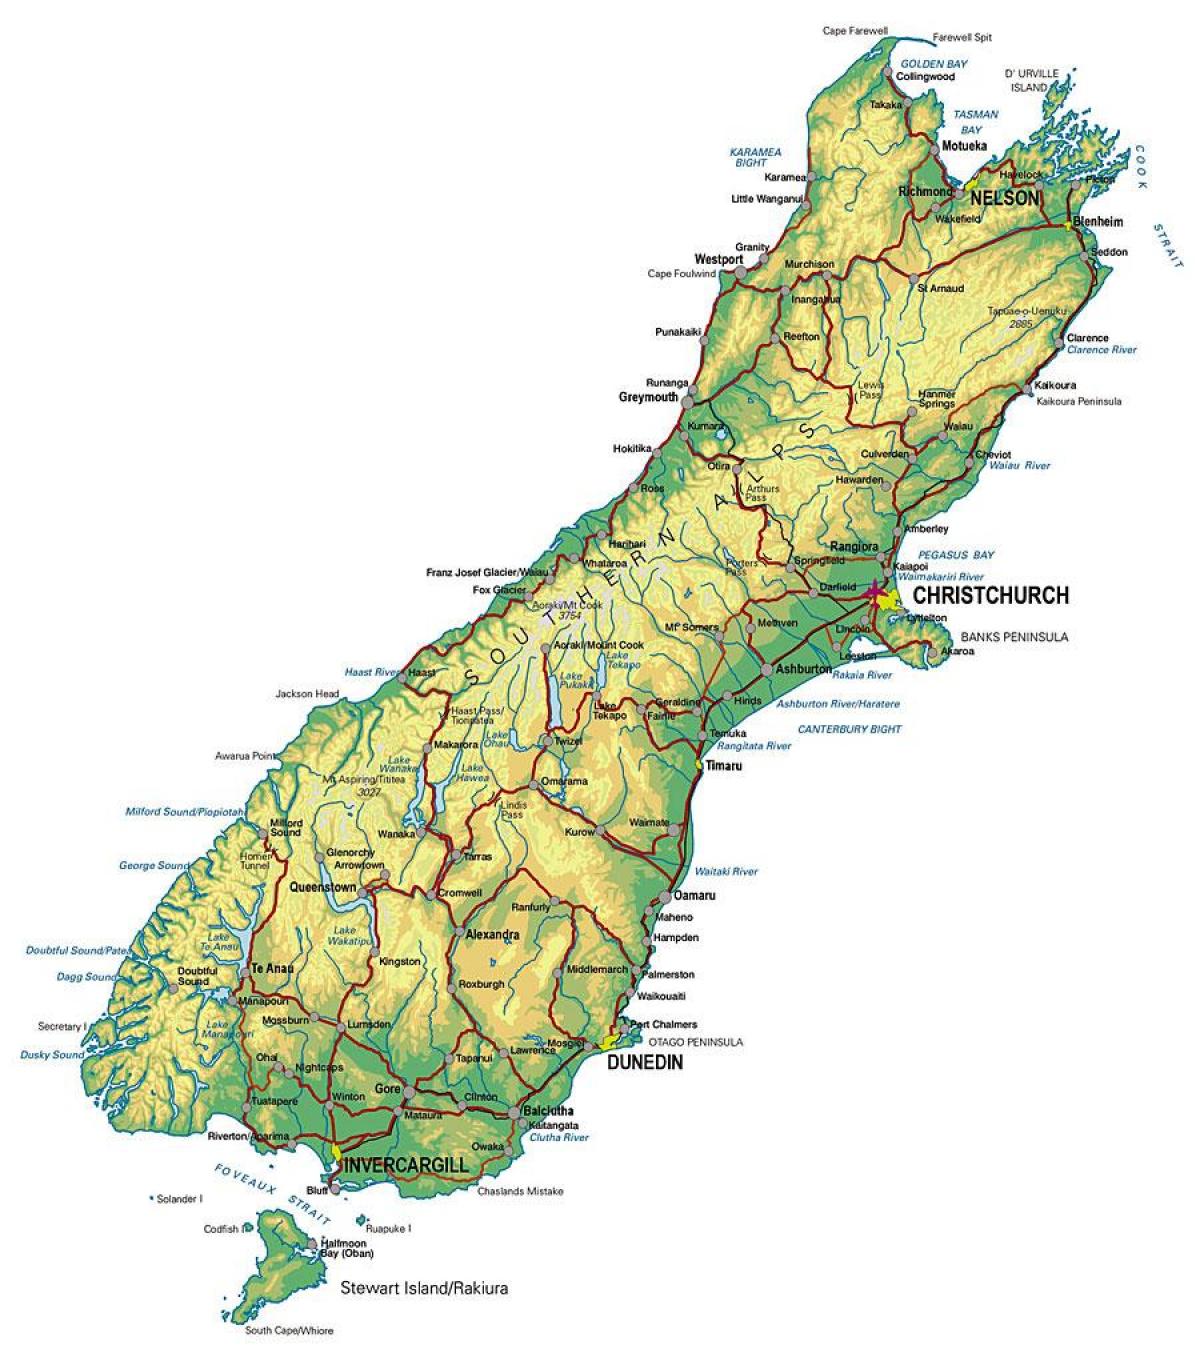 แผนที่ของทางใต้ของนิวซีแลนด์